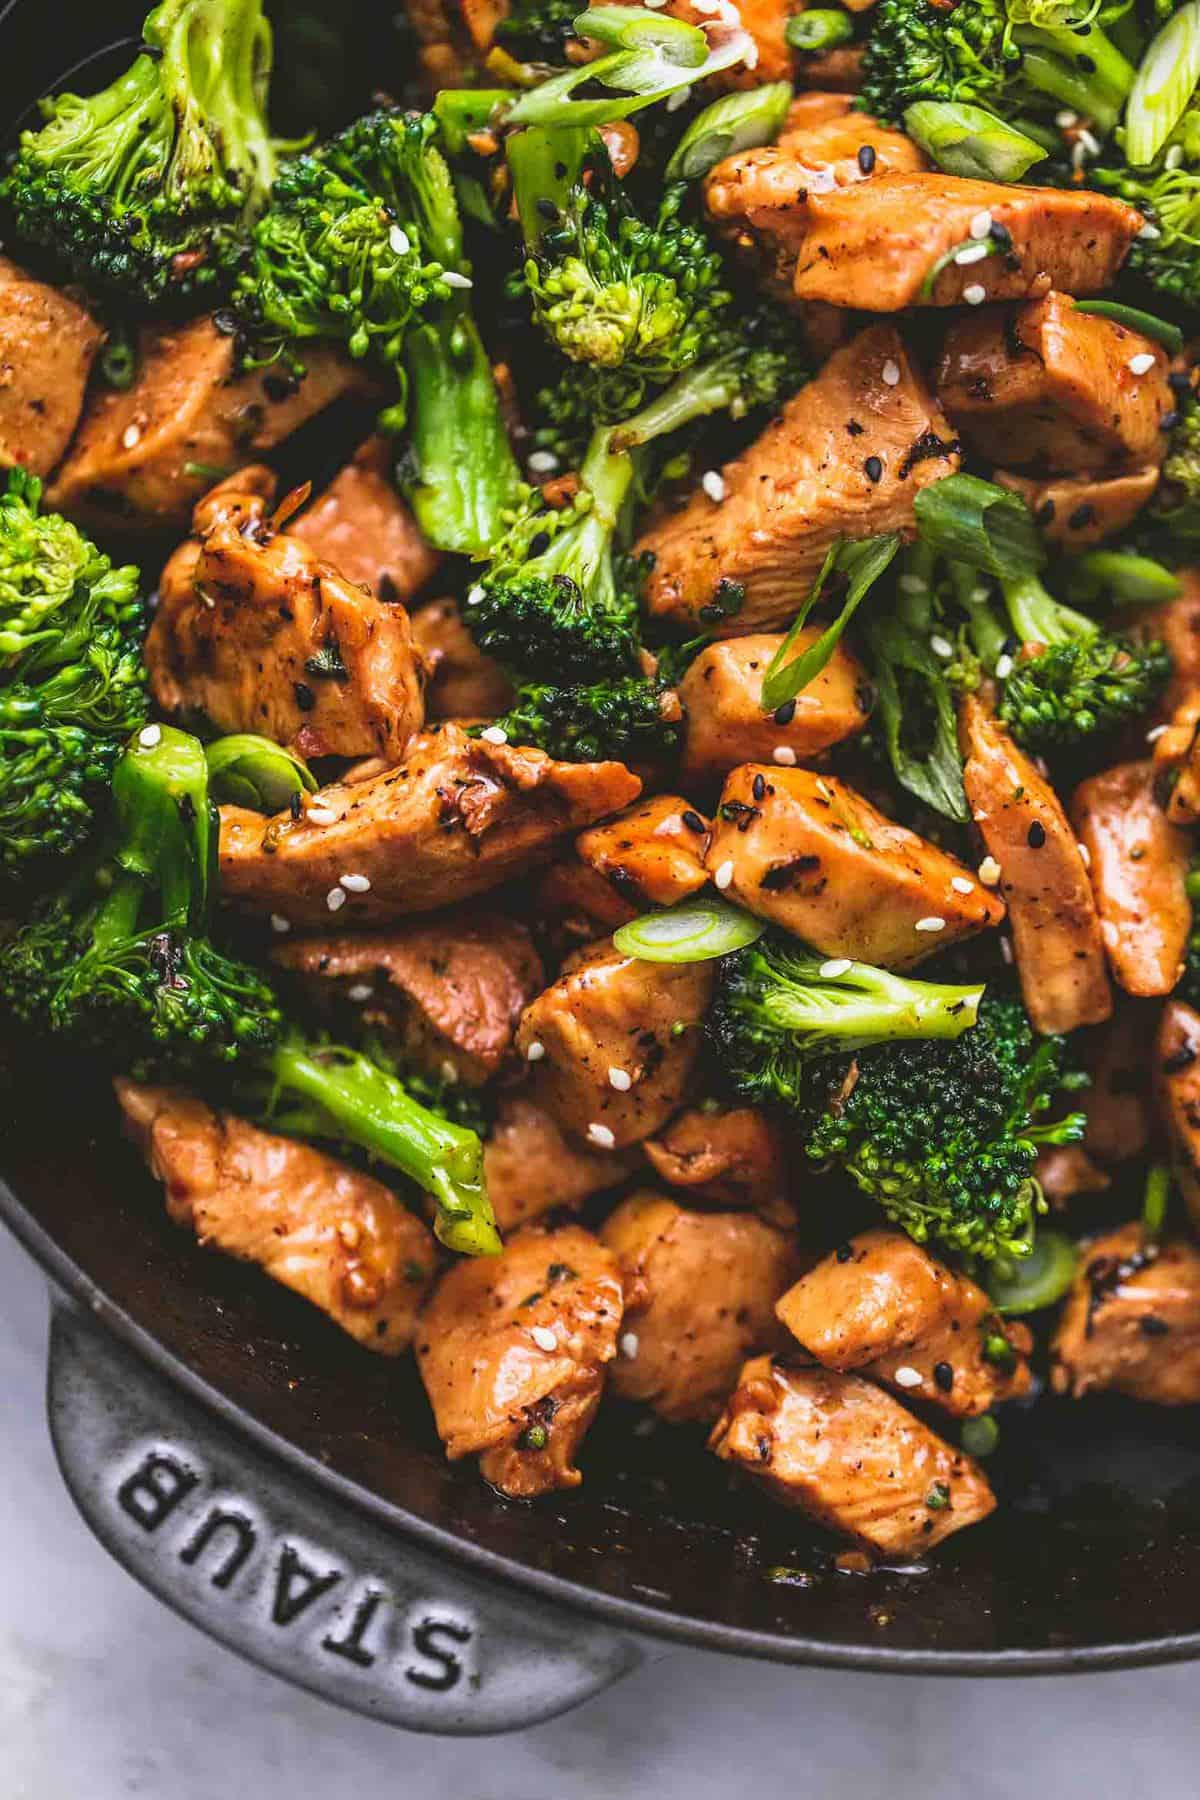 Chicken and broccoli recipe asian